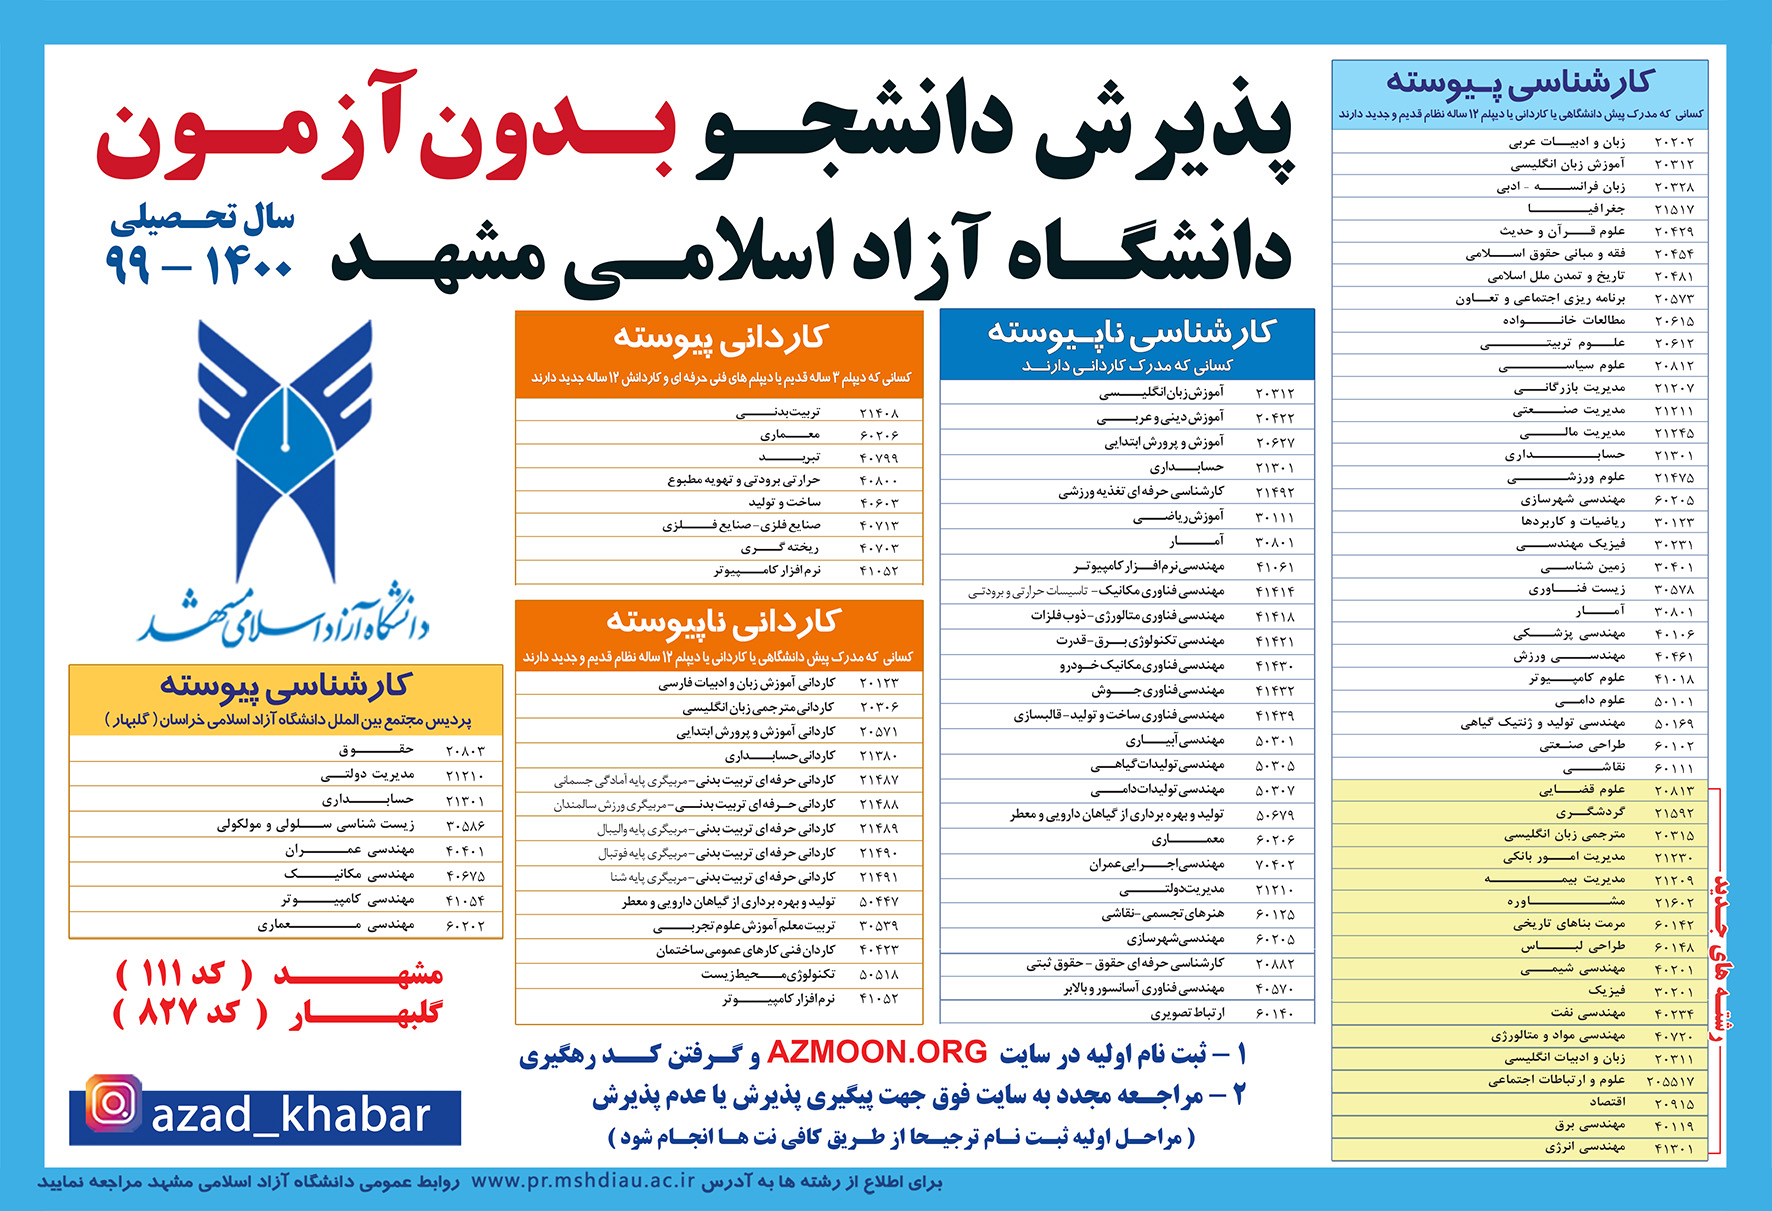 آماده///// ۱۷ رشته جدید به فهرست رشته‌های بدون آزمون دانشگاه آزاد مشهد افزوده شد